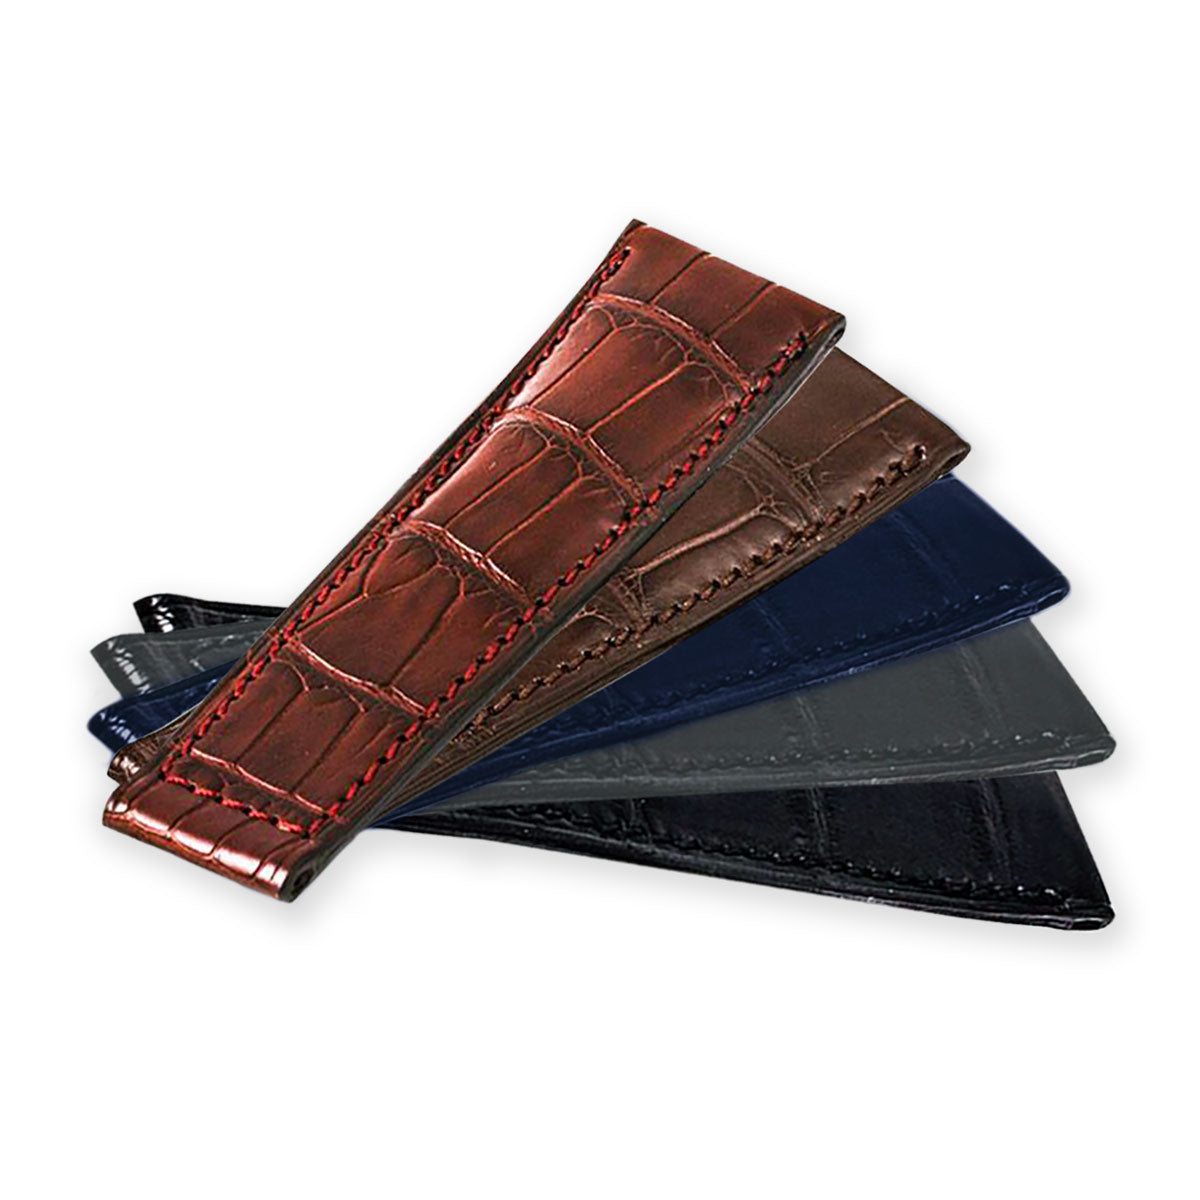 Tag Heuer - Bracelet-montre cuir - Alligator (noir, marron foncé, marron moyen, gris, bleu) - watch band leather strap - ABP Concept -